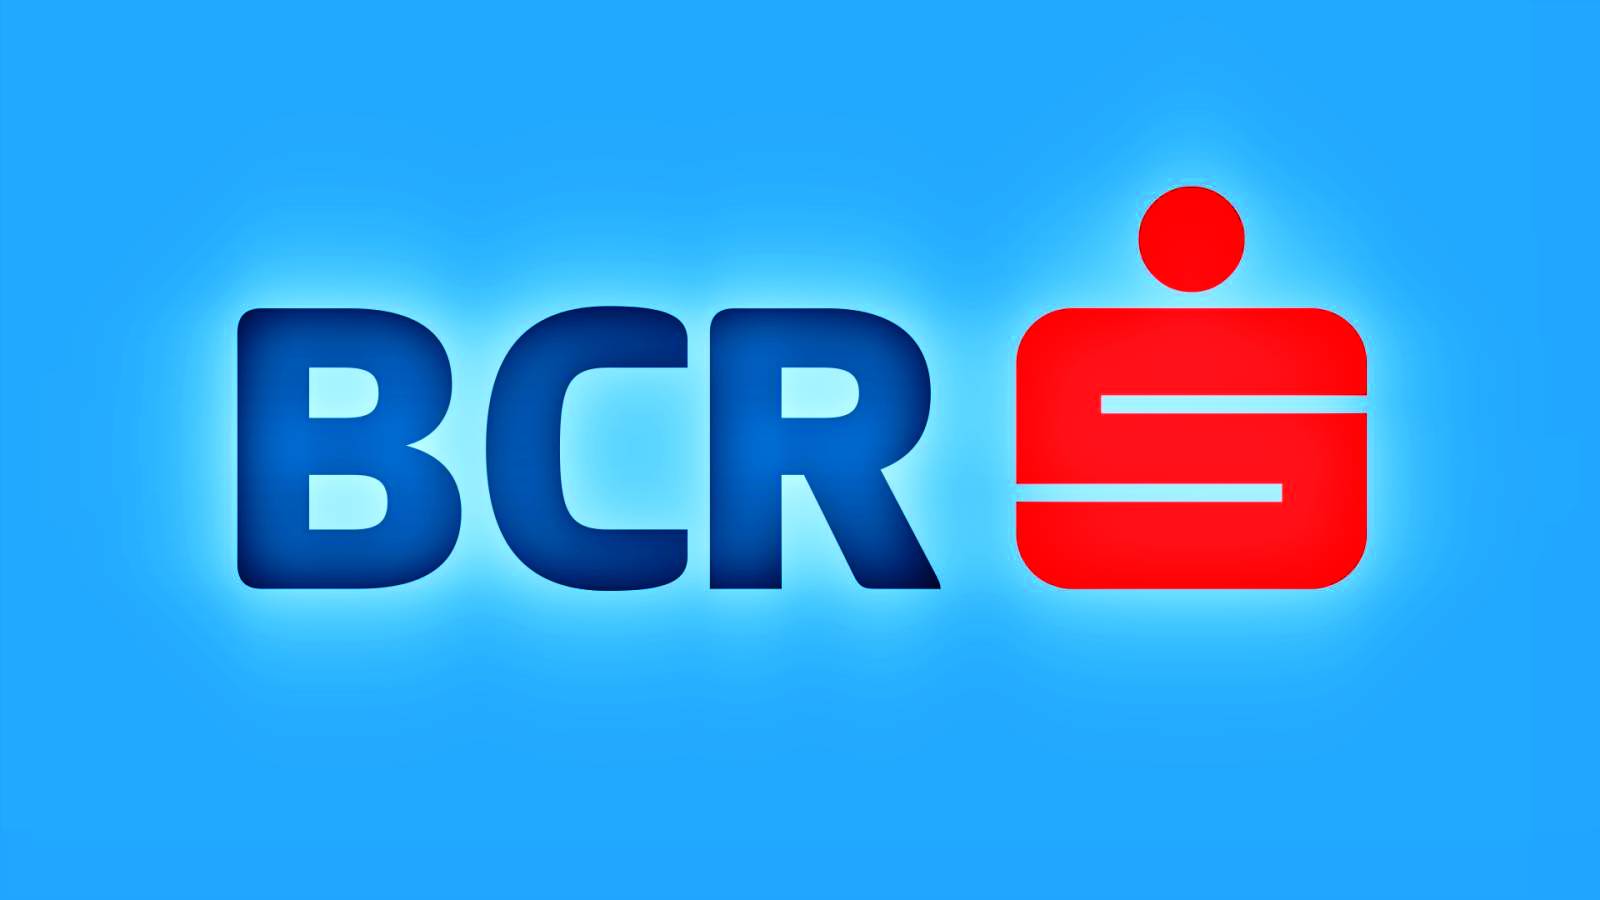 BCR Romania keyboard